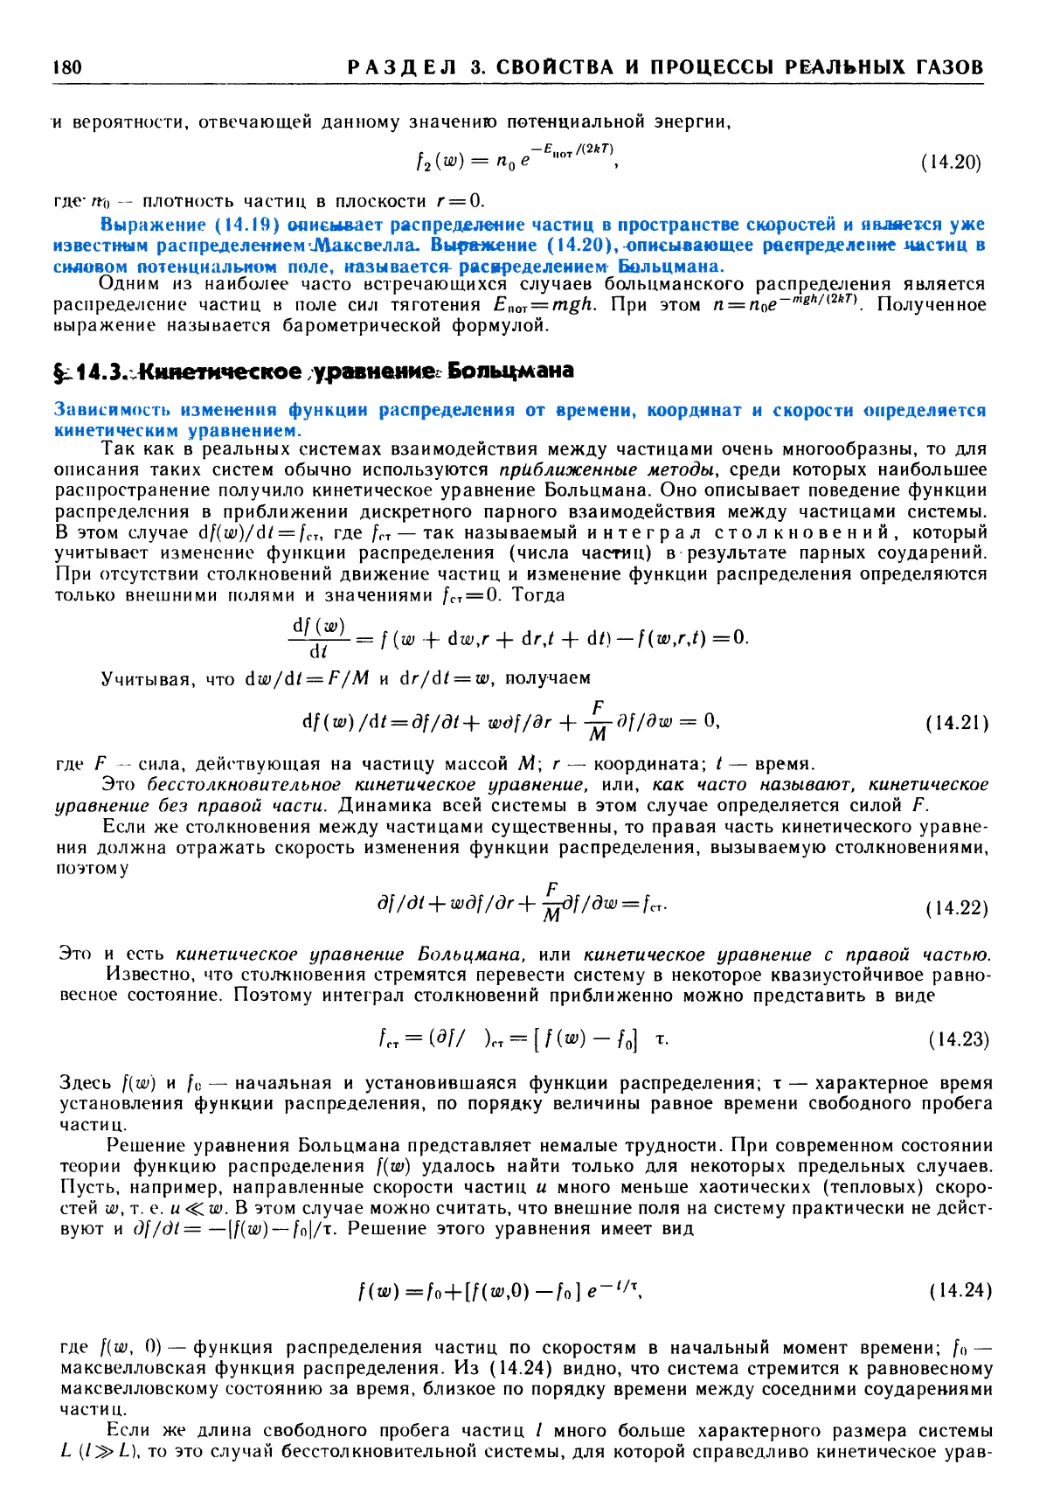 § 14.3. Кинетическое уравнение Больцмана